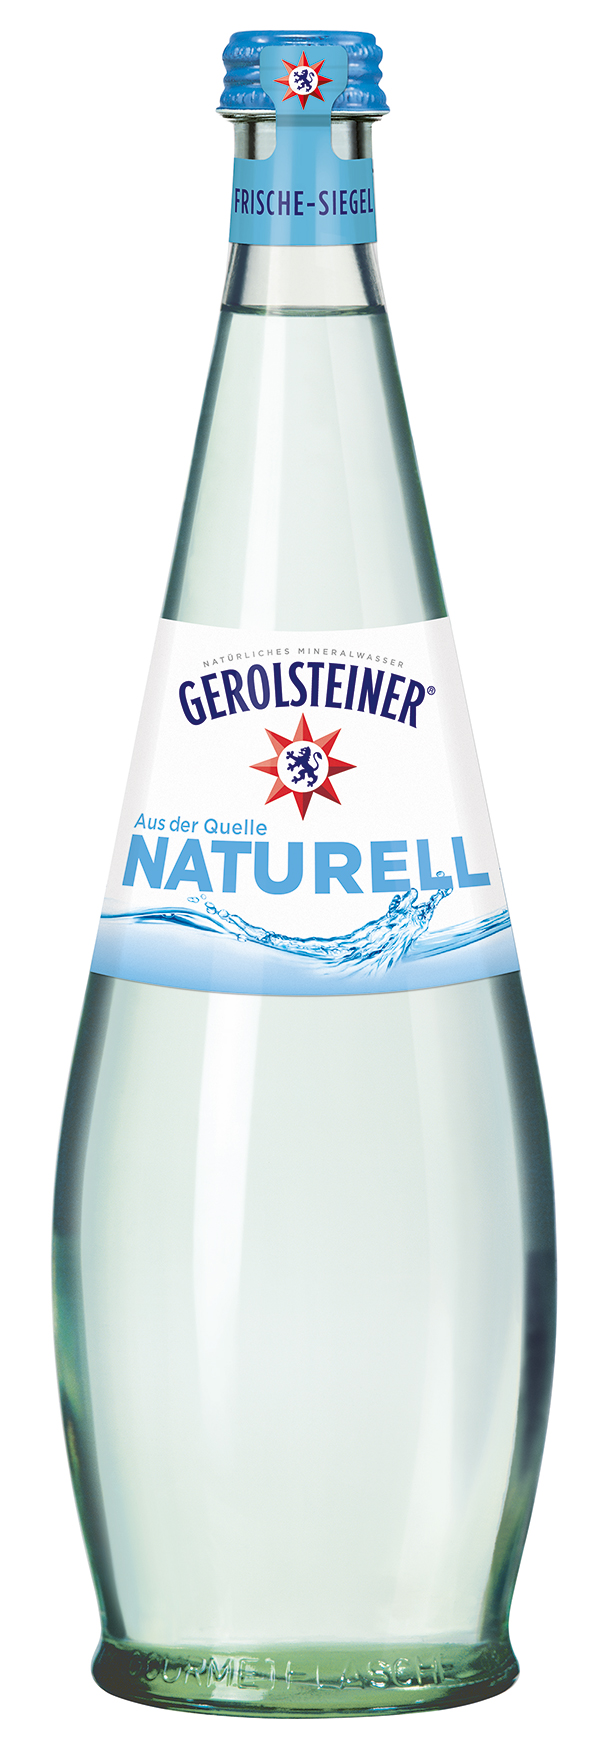 Gerolsteiner Naturell Gourmet 12 x 0,75 l (Glas)